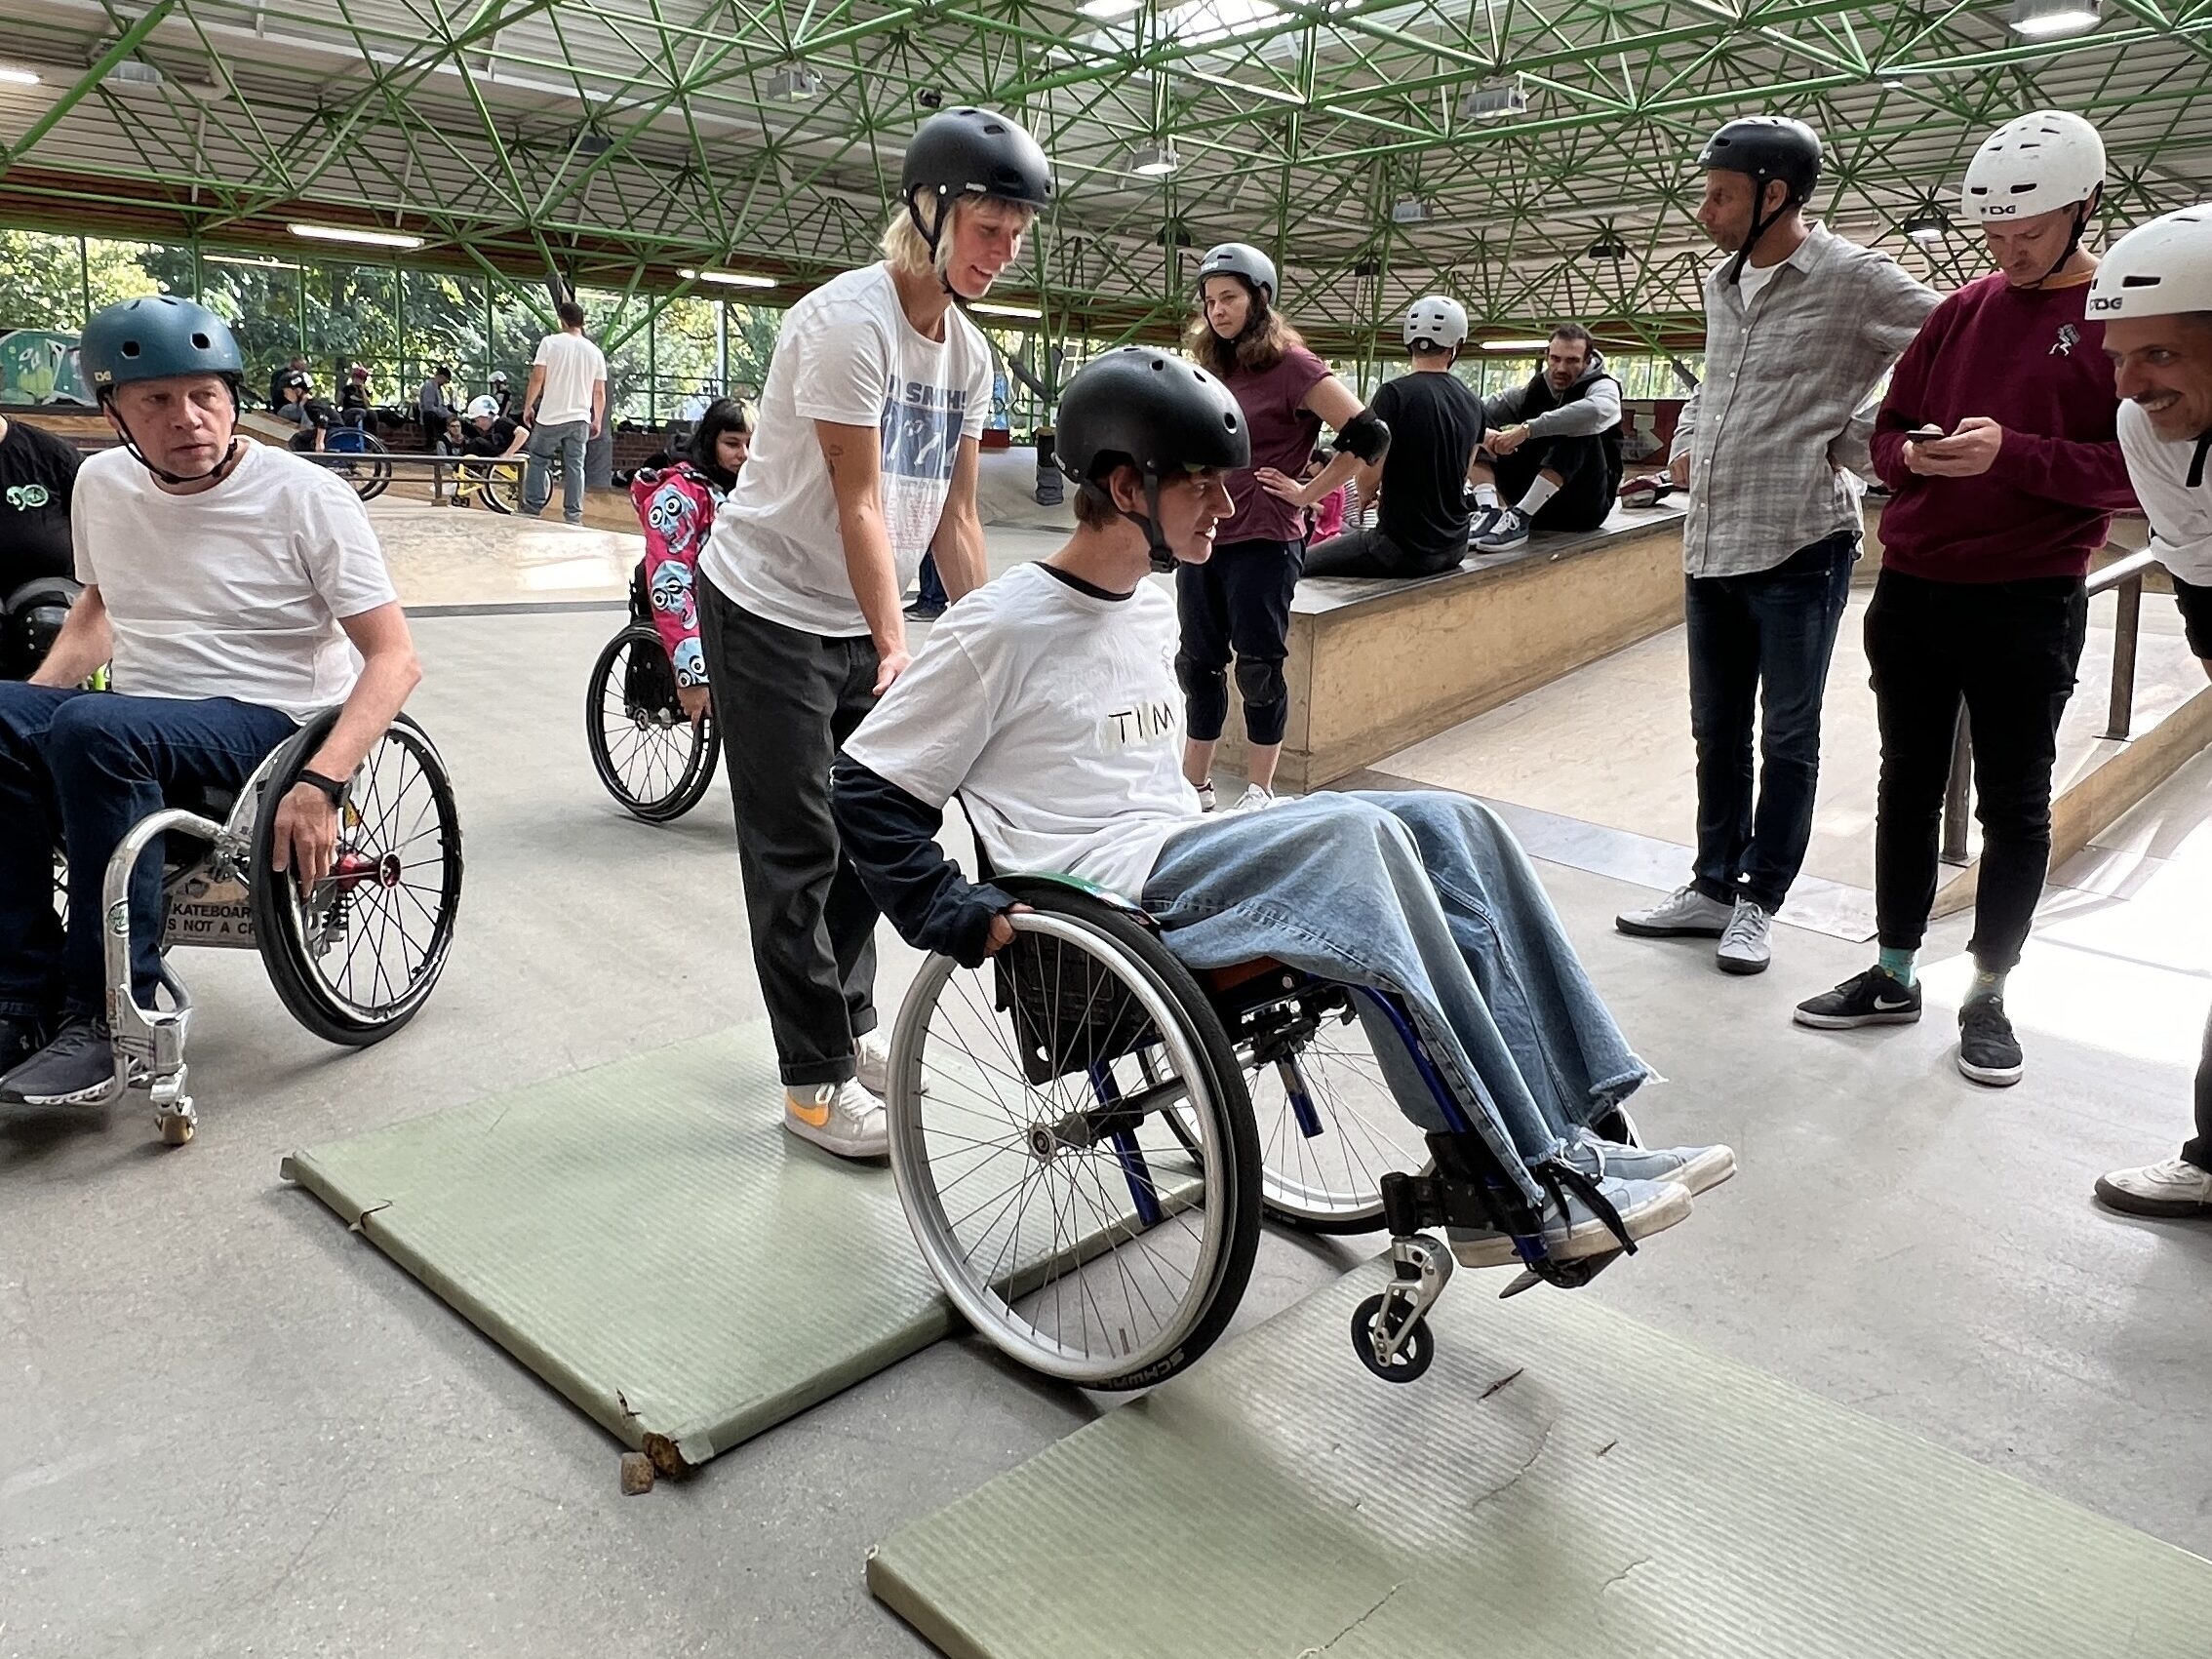 Eine Frau hilft einem Mann im Rollstuhl beim üben auf den Hinterrädern zu stehen.